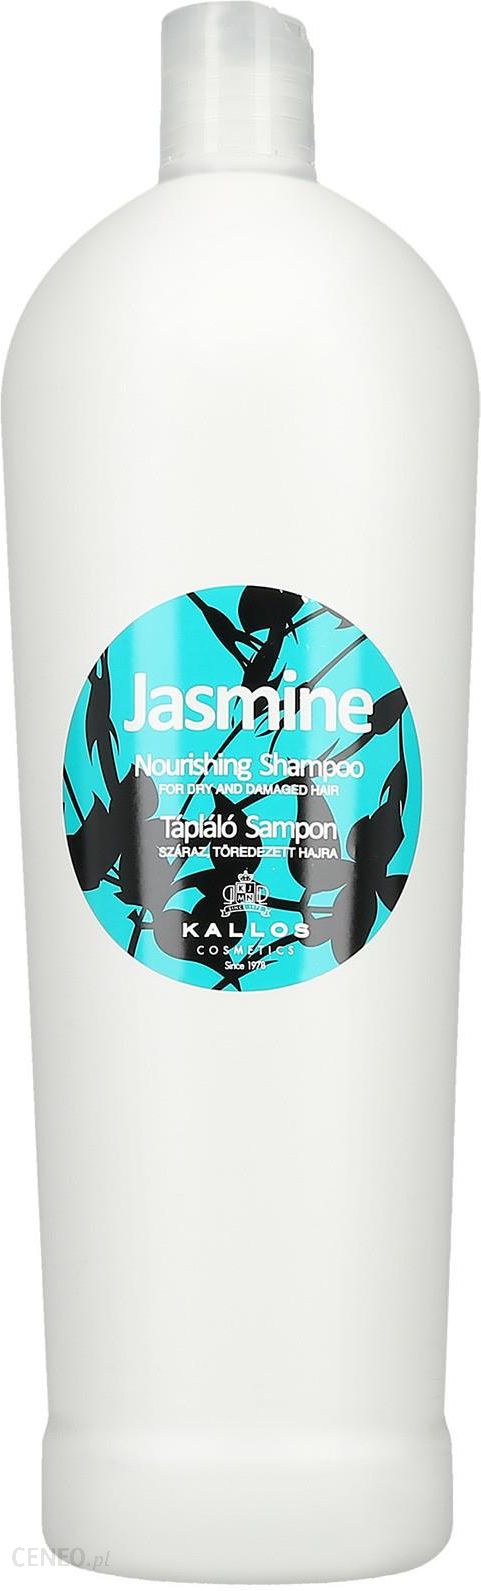 kallos szampon jasmine